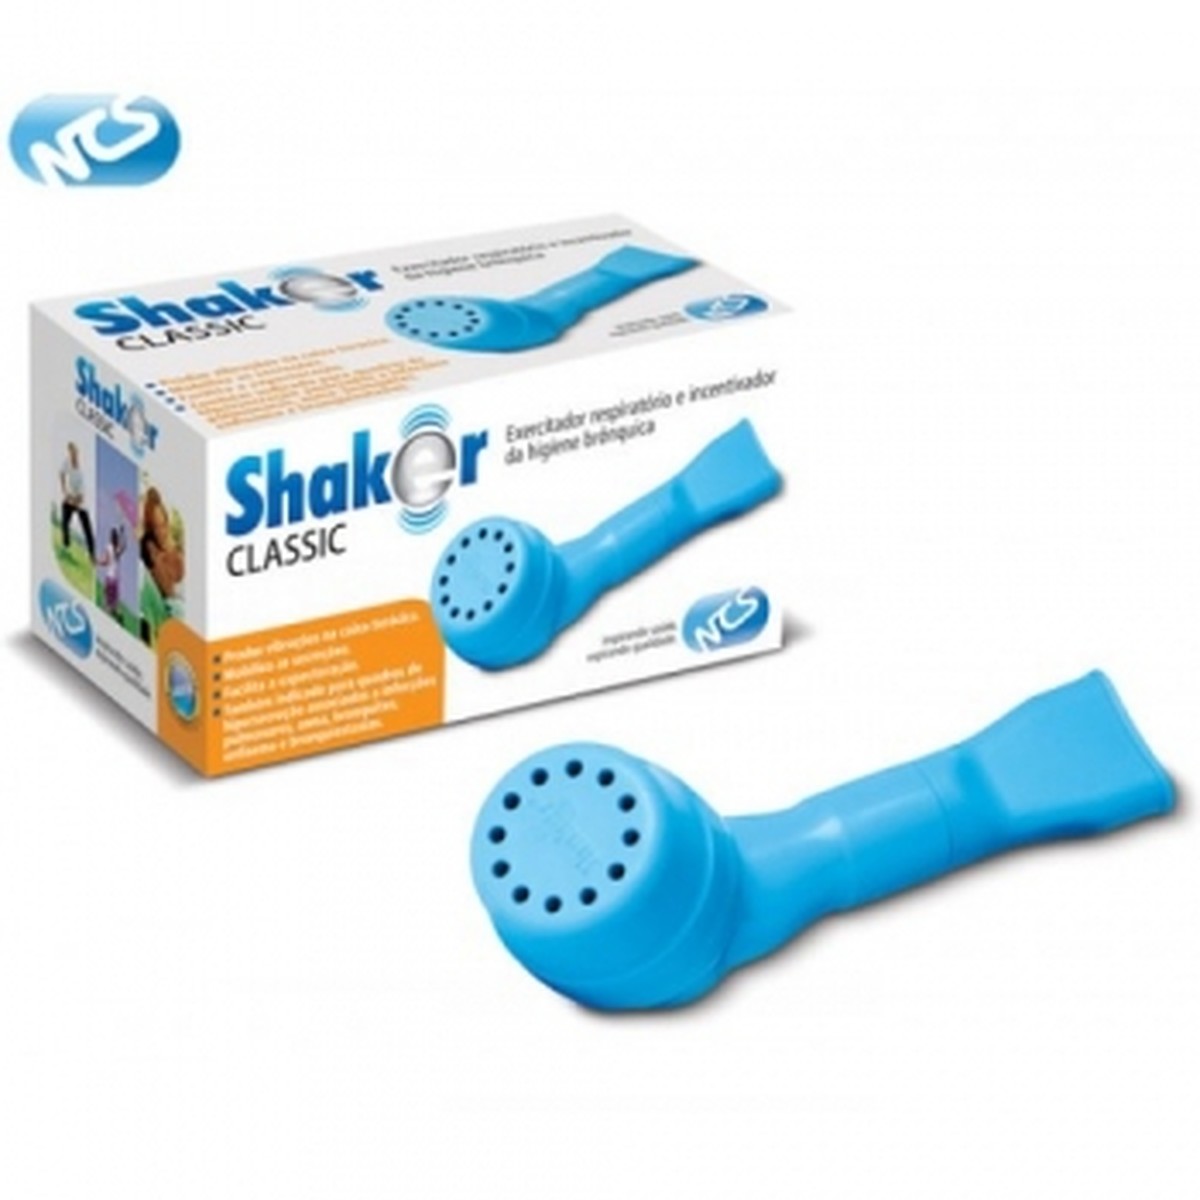 Foto do produto Shaker para Fisioterapia Respiratória